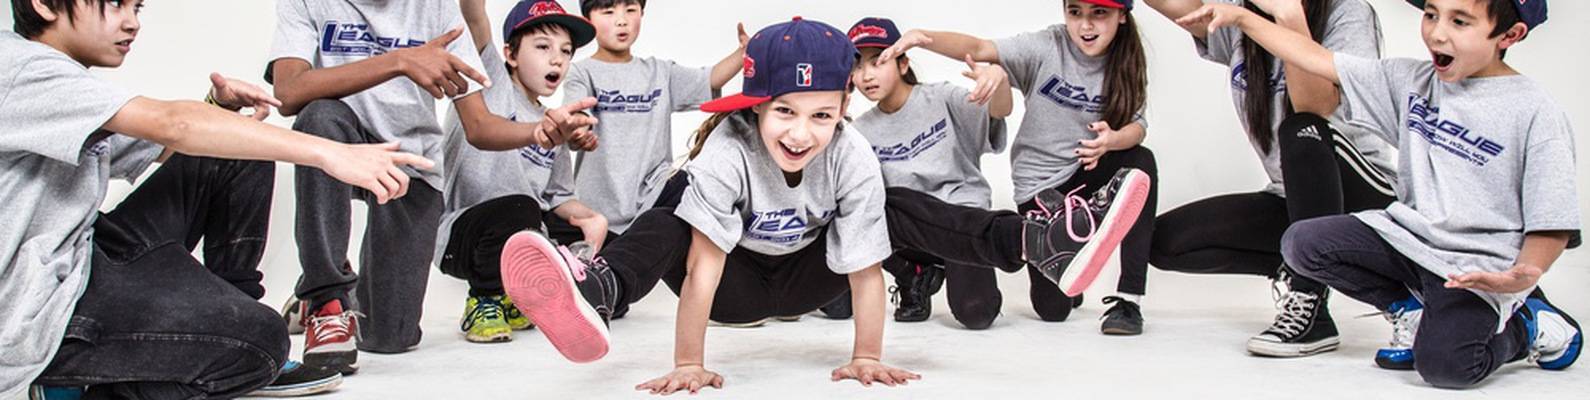 Современные танцы для детей в детском саду на выпуск: хип-хоп или брейк-данс